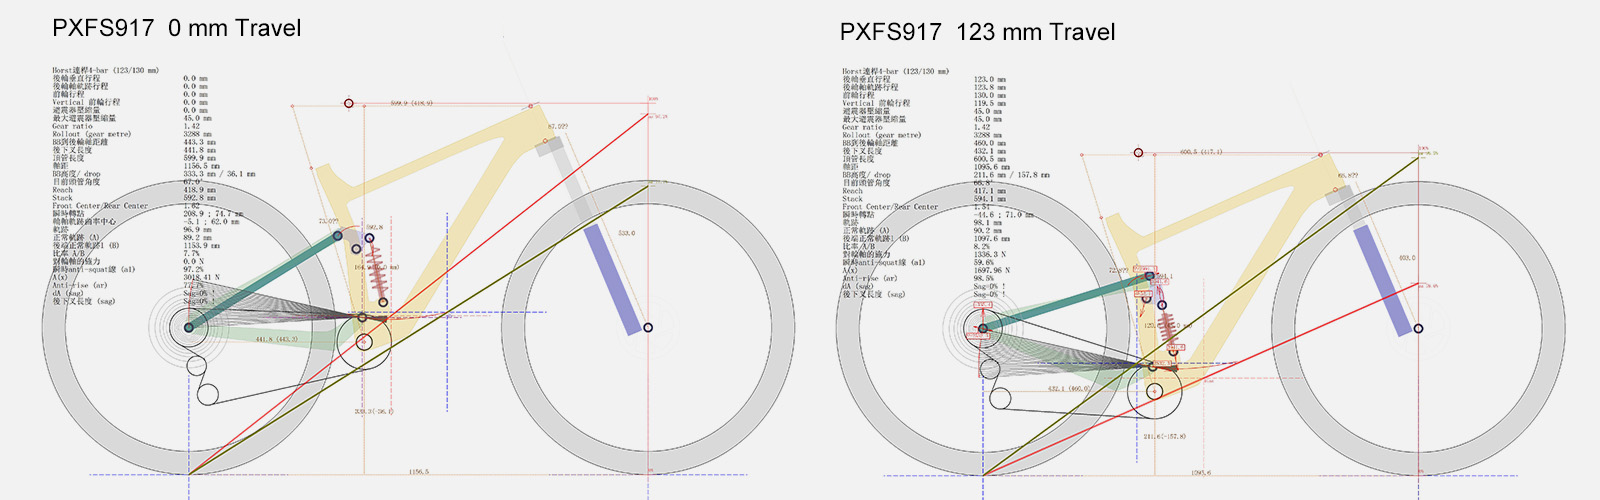 PXFS917 Frame Suspension Simulation